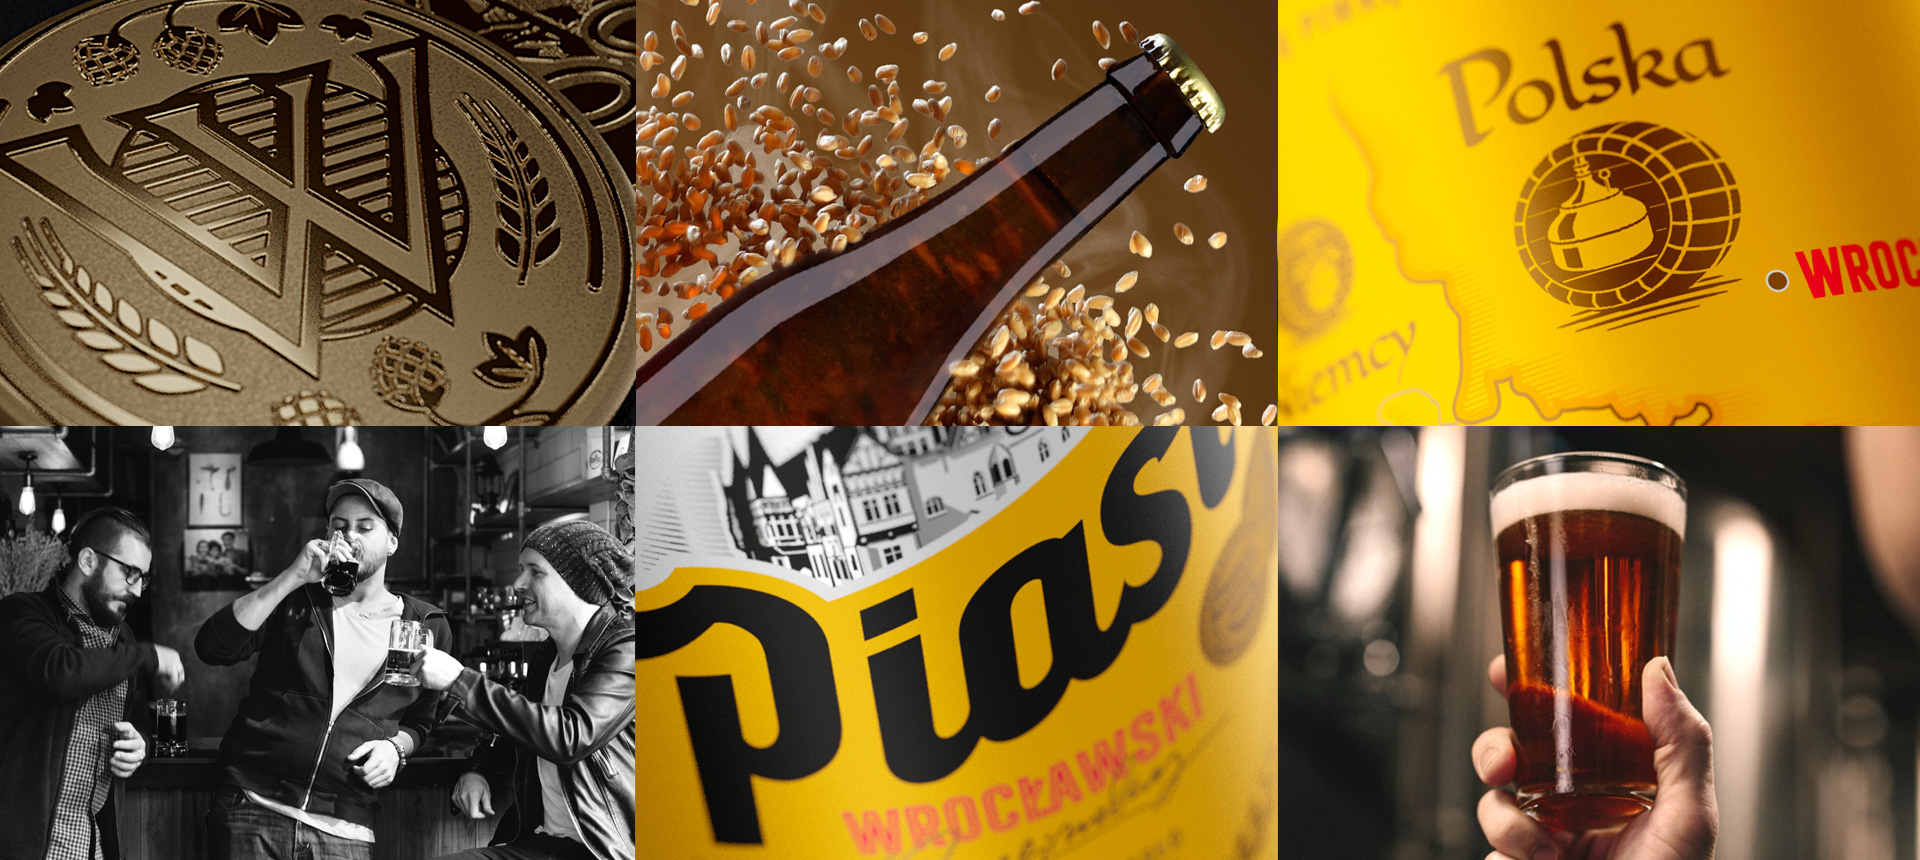 Detale opakowania piwa Piast - nowe logo, nowa jakość!